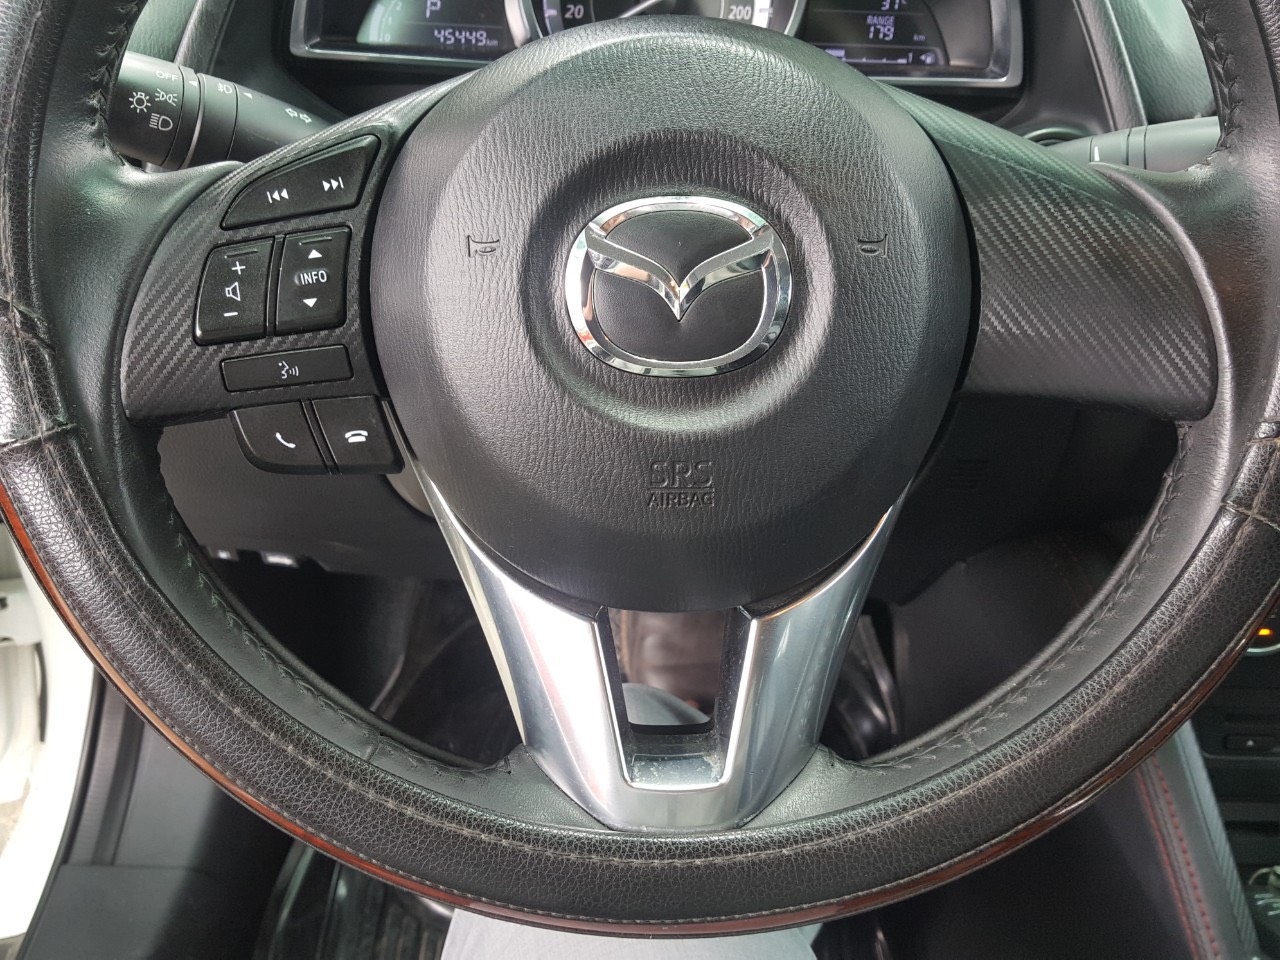 Mazda 2   2017 - Hãng bán Mazda 2 2017, màu trắng, đúng chất, giá TL, hỗ trợ góp